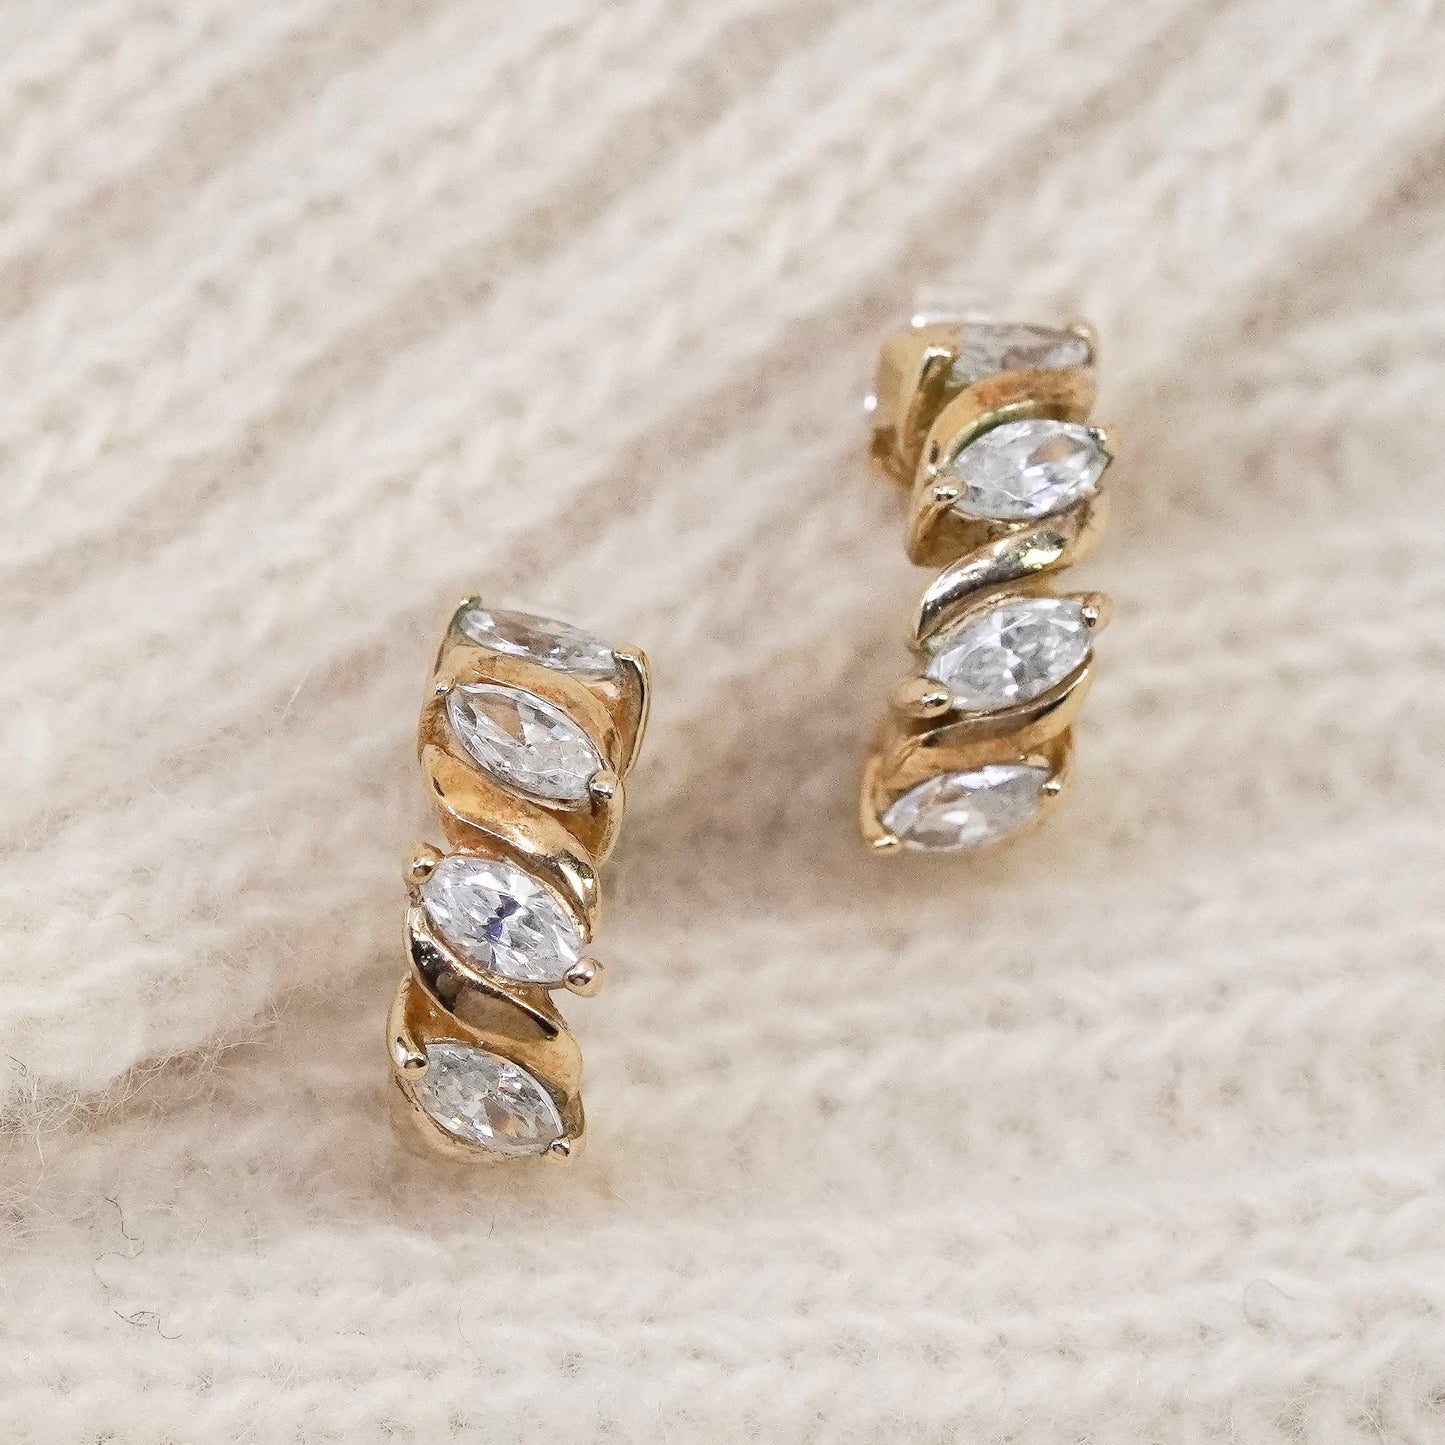 0.5”, Vintage vermeil gold over sterling silver earrings, 925 hoops, huggie cz